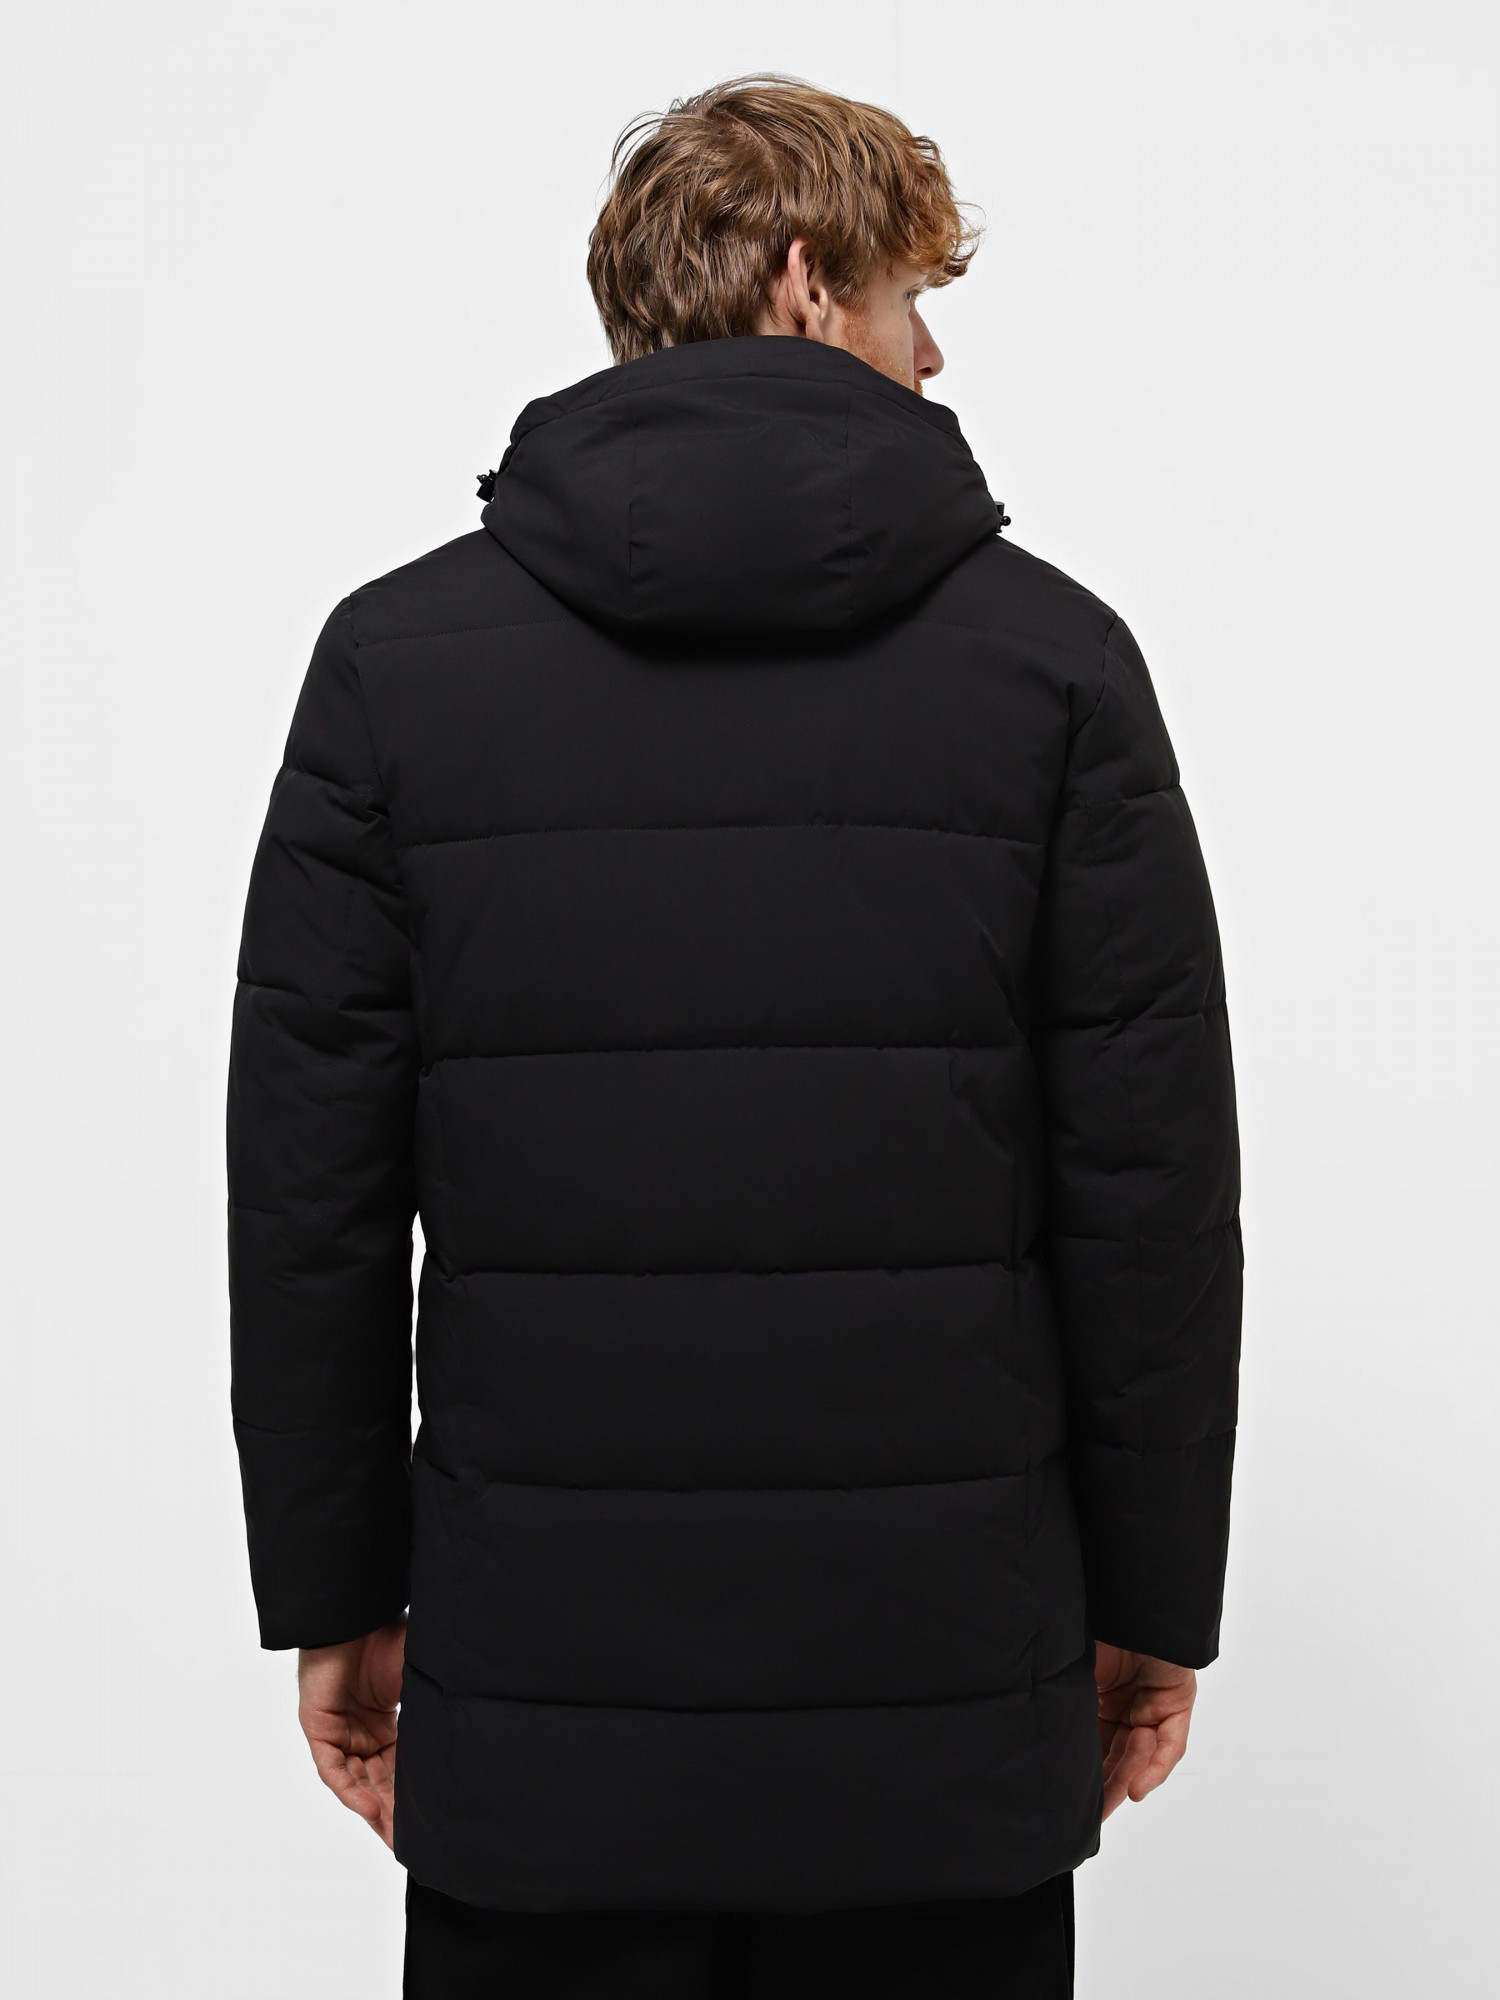 Куртка мужская Evoids Bourges черная 713737-010 изображение 3